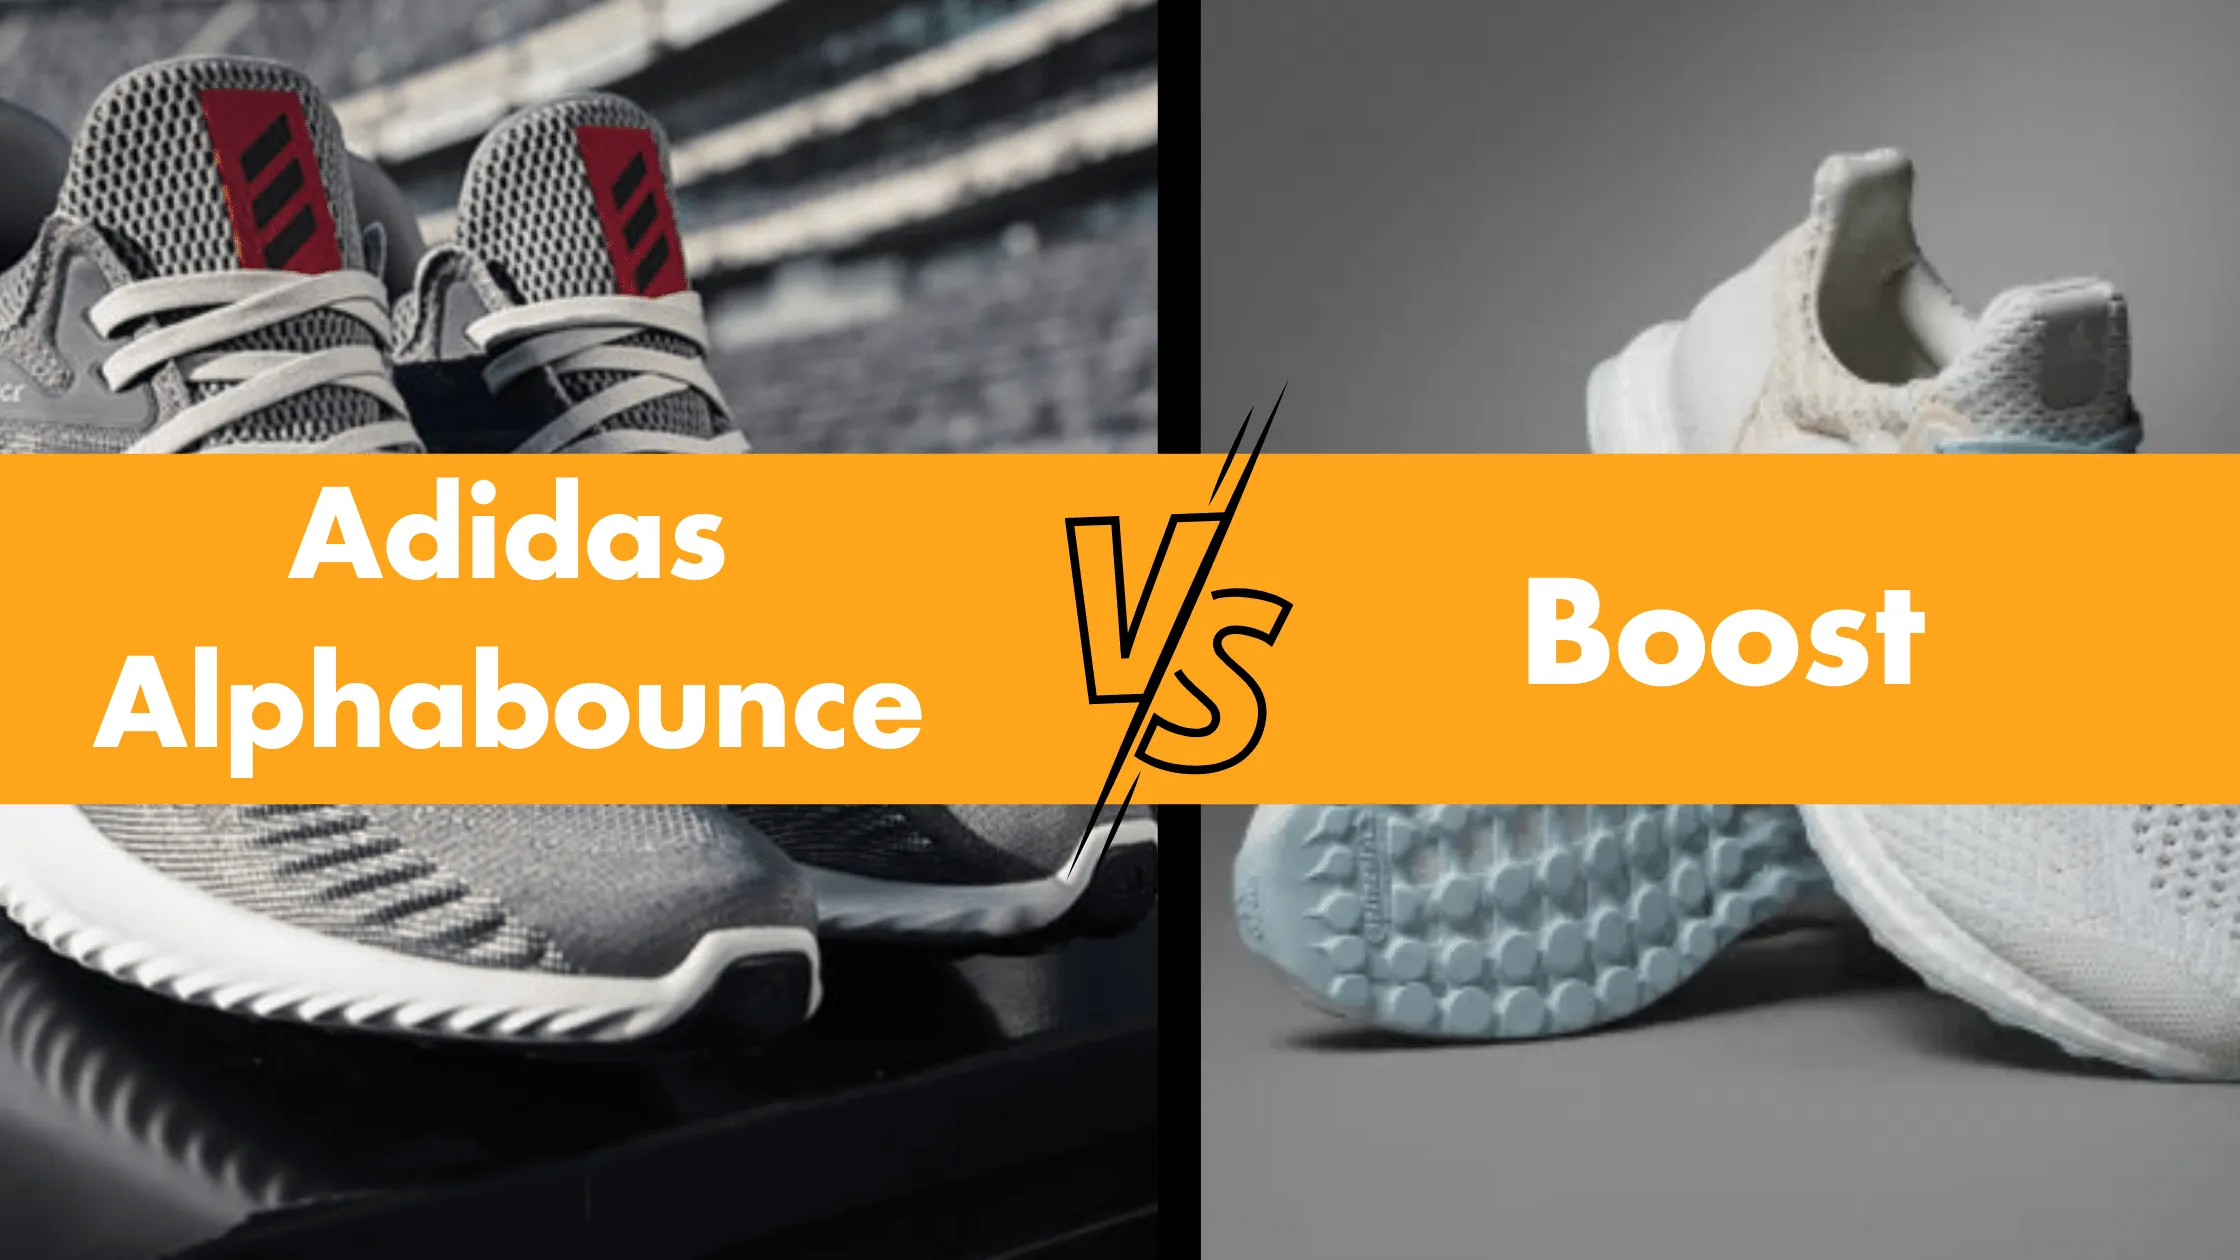 Adidas Alphabounce vs Boost